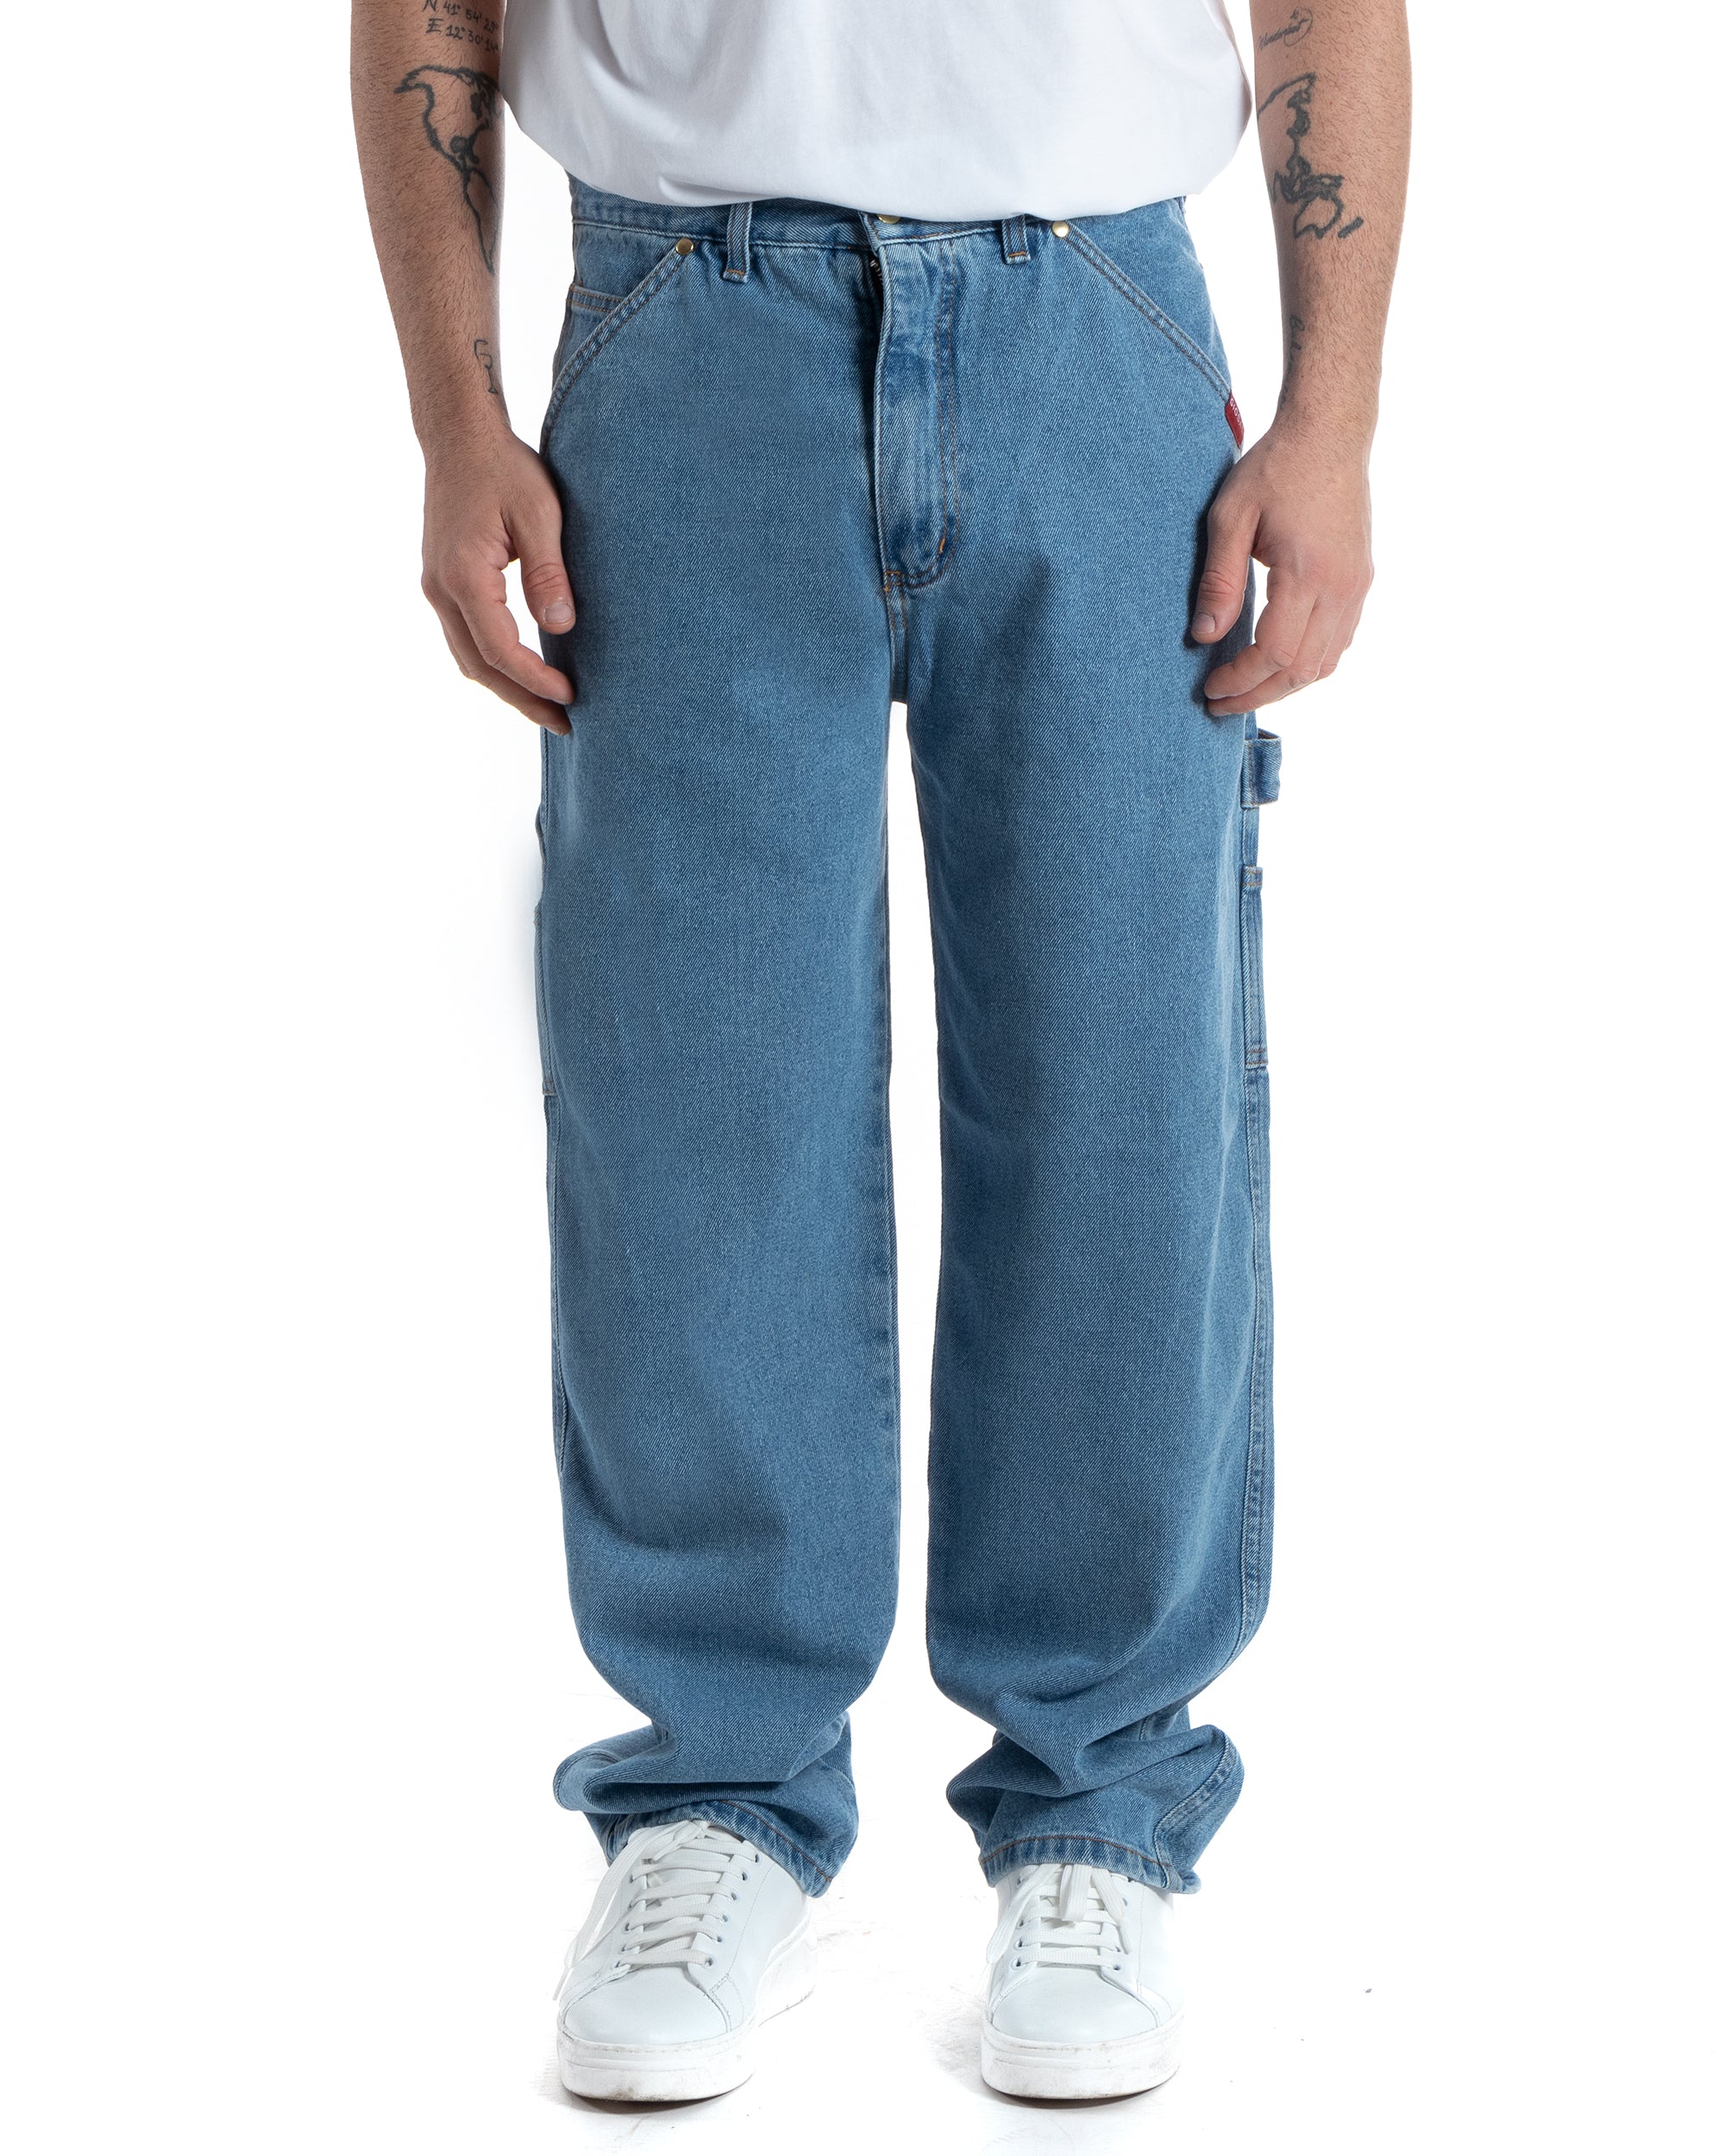 Pantaloni Jeans Uomo Baggy Fit Carpenter Worker Cargo Con Ricamo Denim Chiaro GIOSAL-P5991A